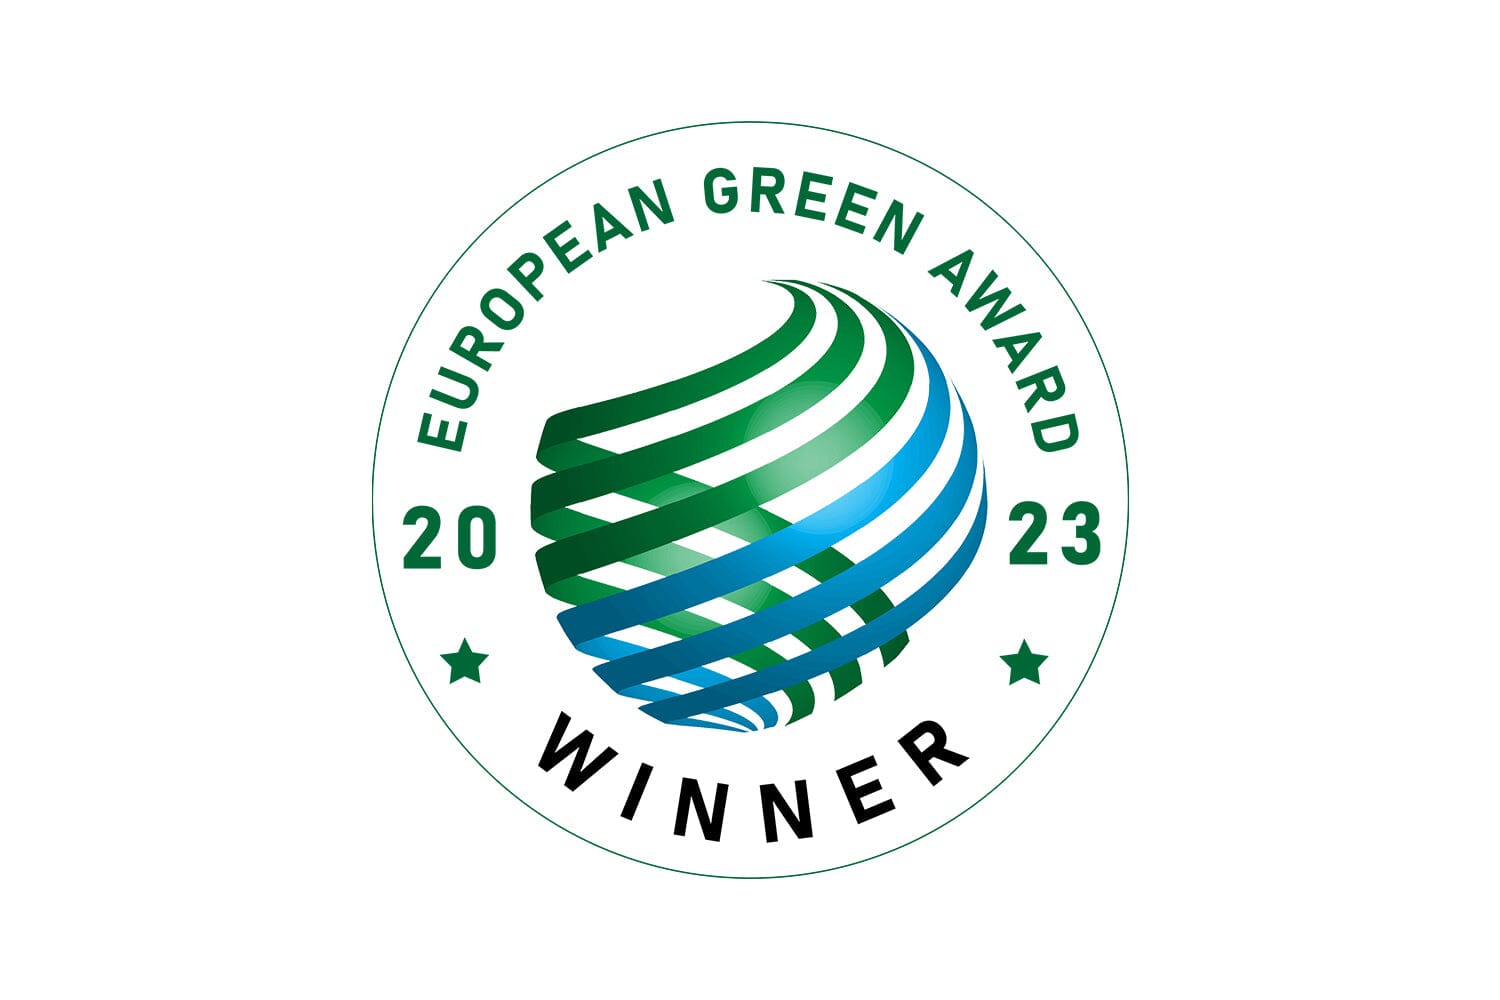 Paperdent Zahnpflegeprodukte gewinnen Nachhaltigkeitsaward EU Green Award